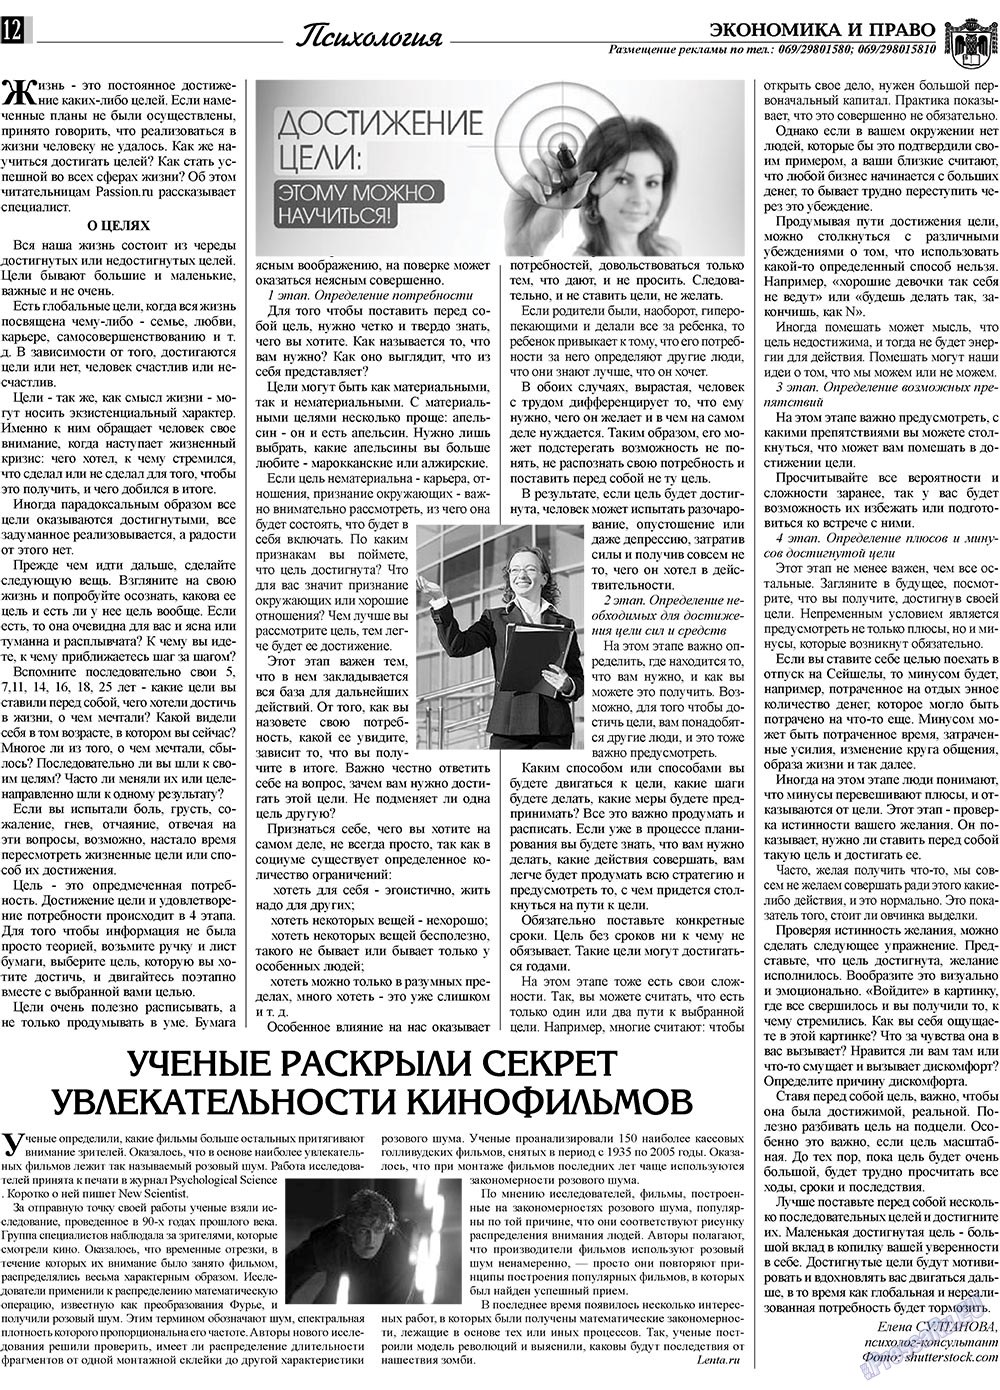 Экономика и право, газета. 2010 №3 стр.12